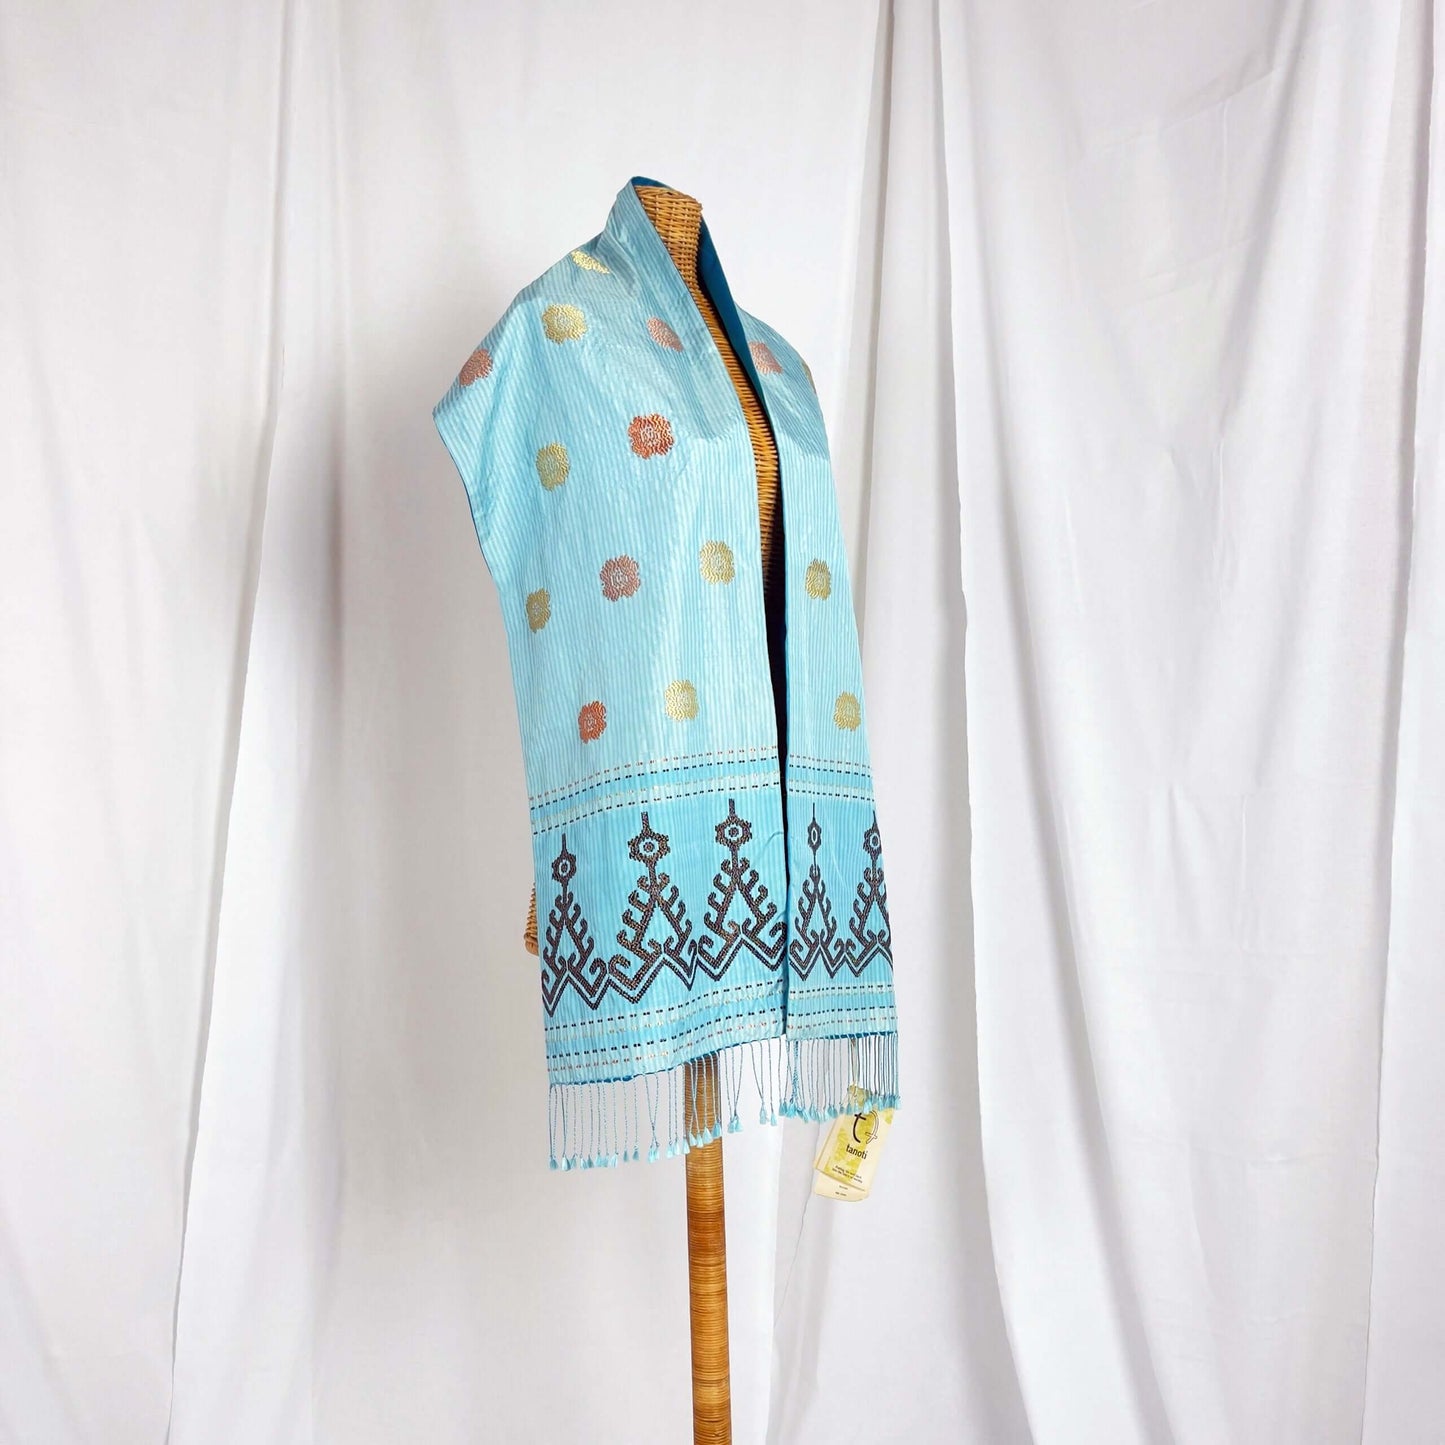 Iban Rebung (Brown) handwoven silk songket shawl textile